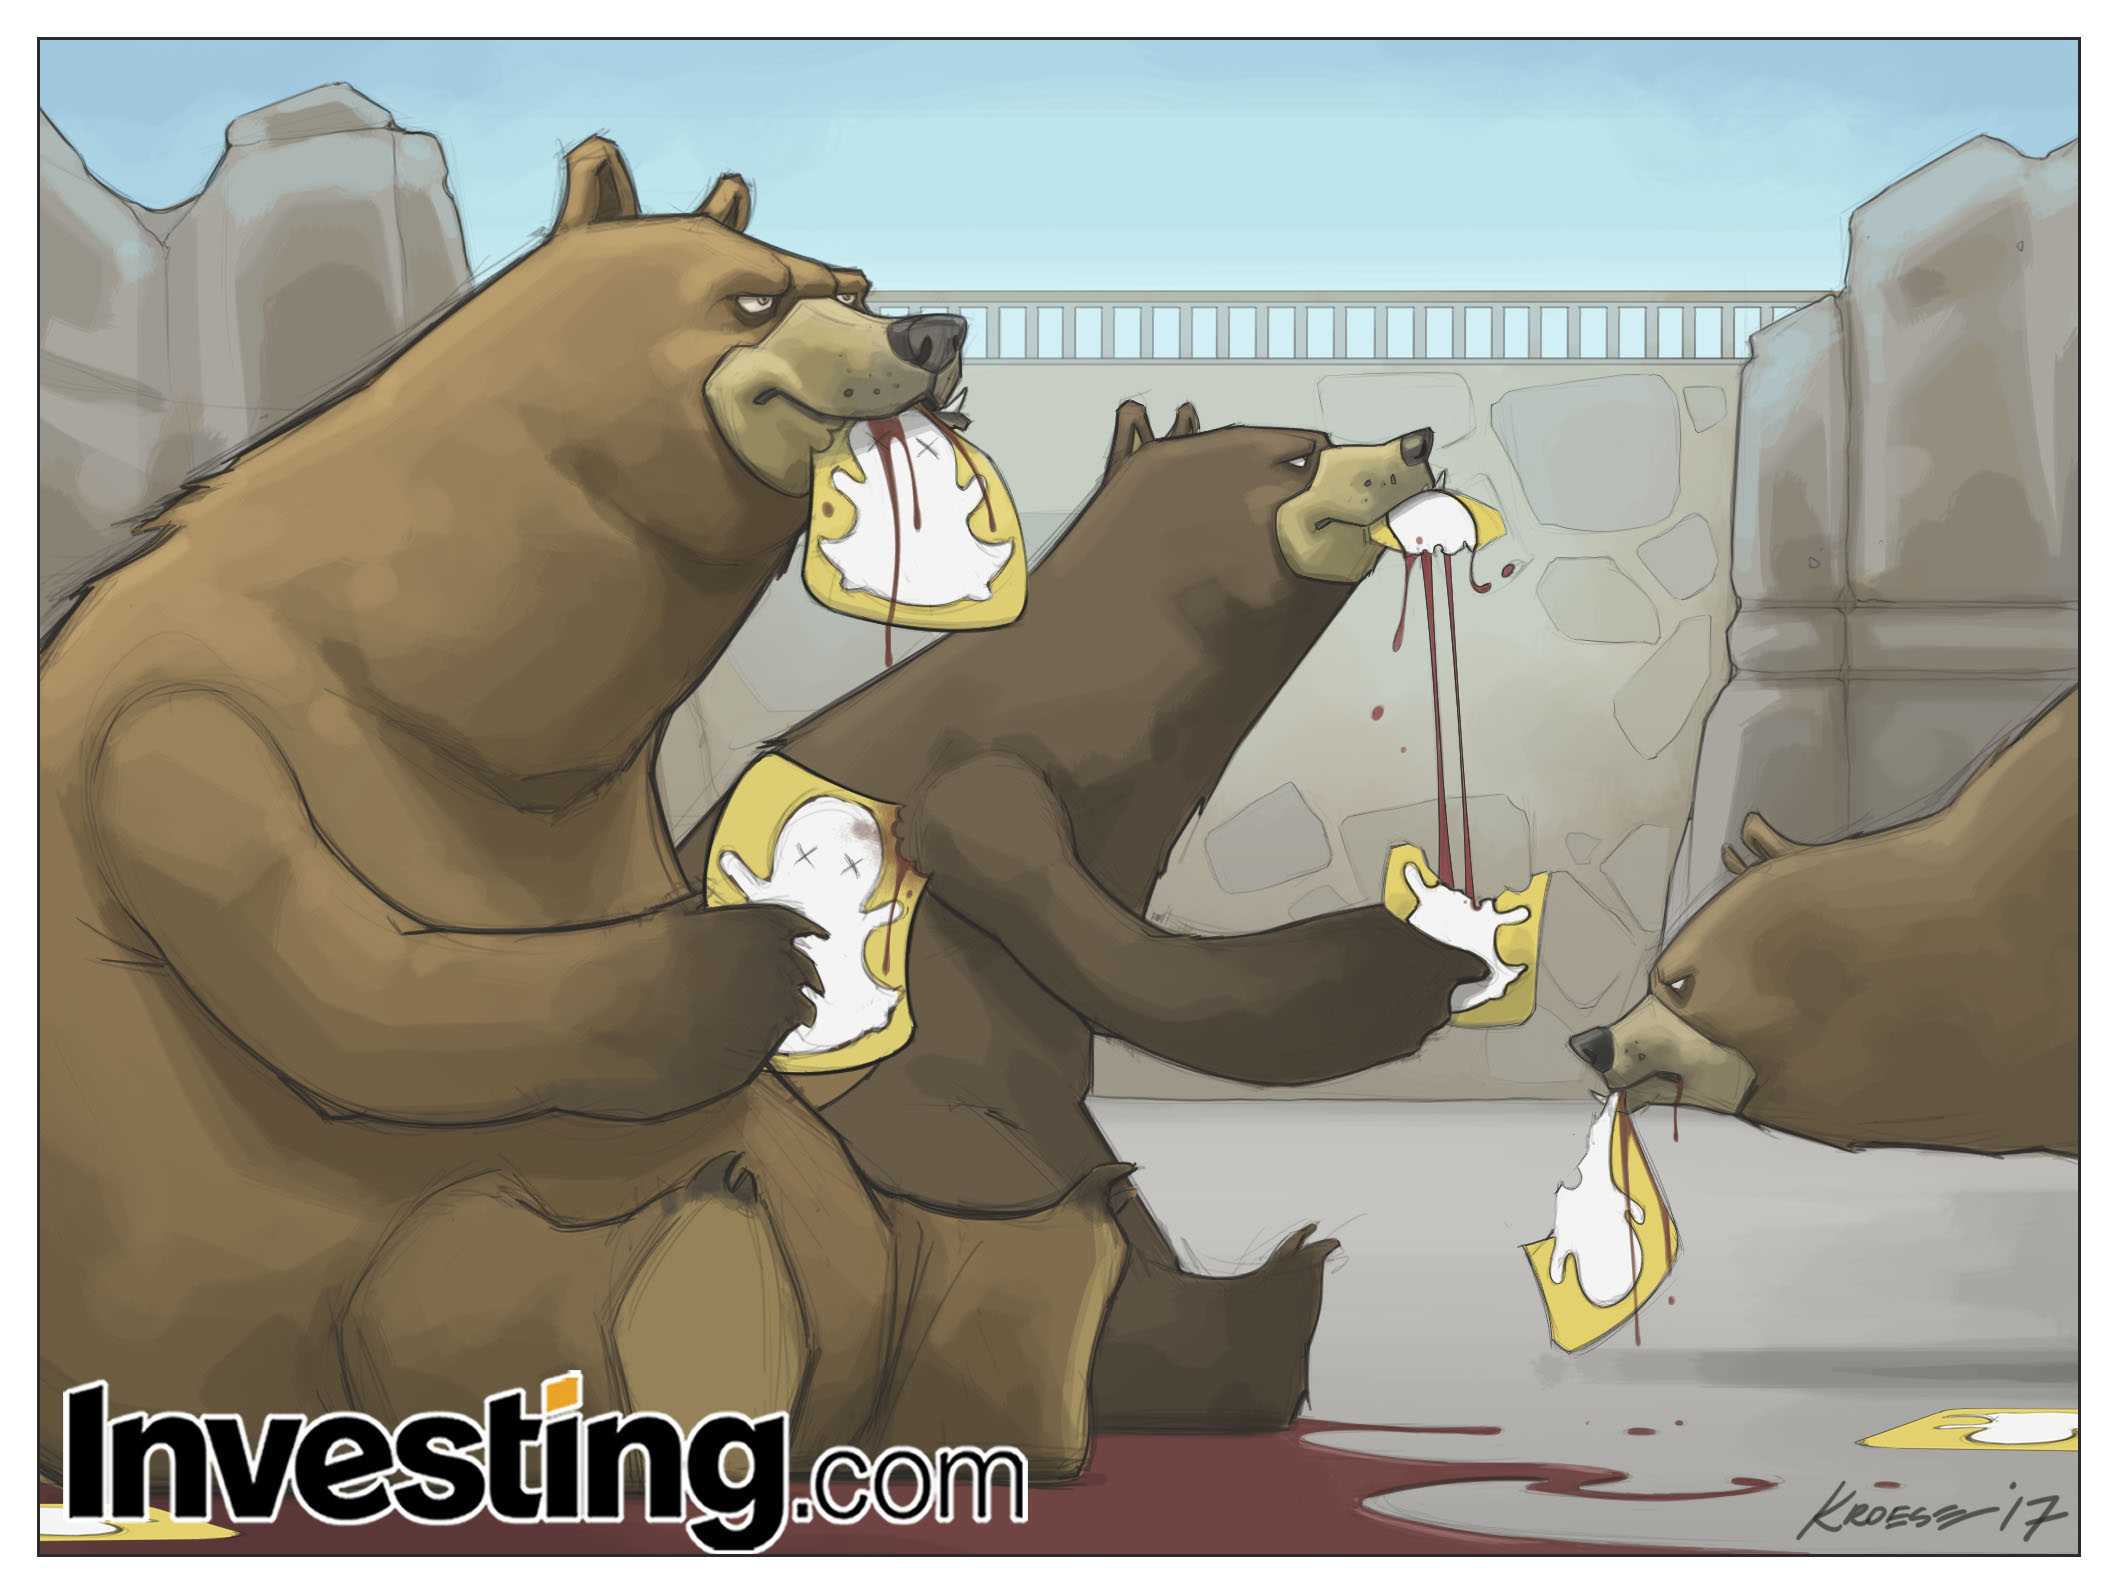 Los osos se ensañan con $SNAP tras su vertiginoso debut bursátil